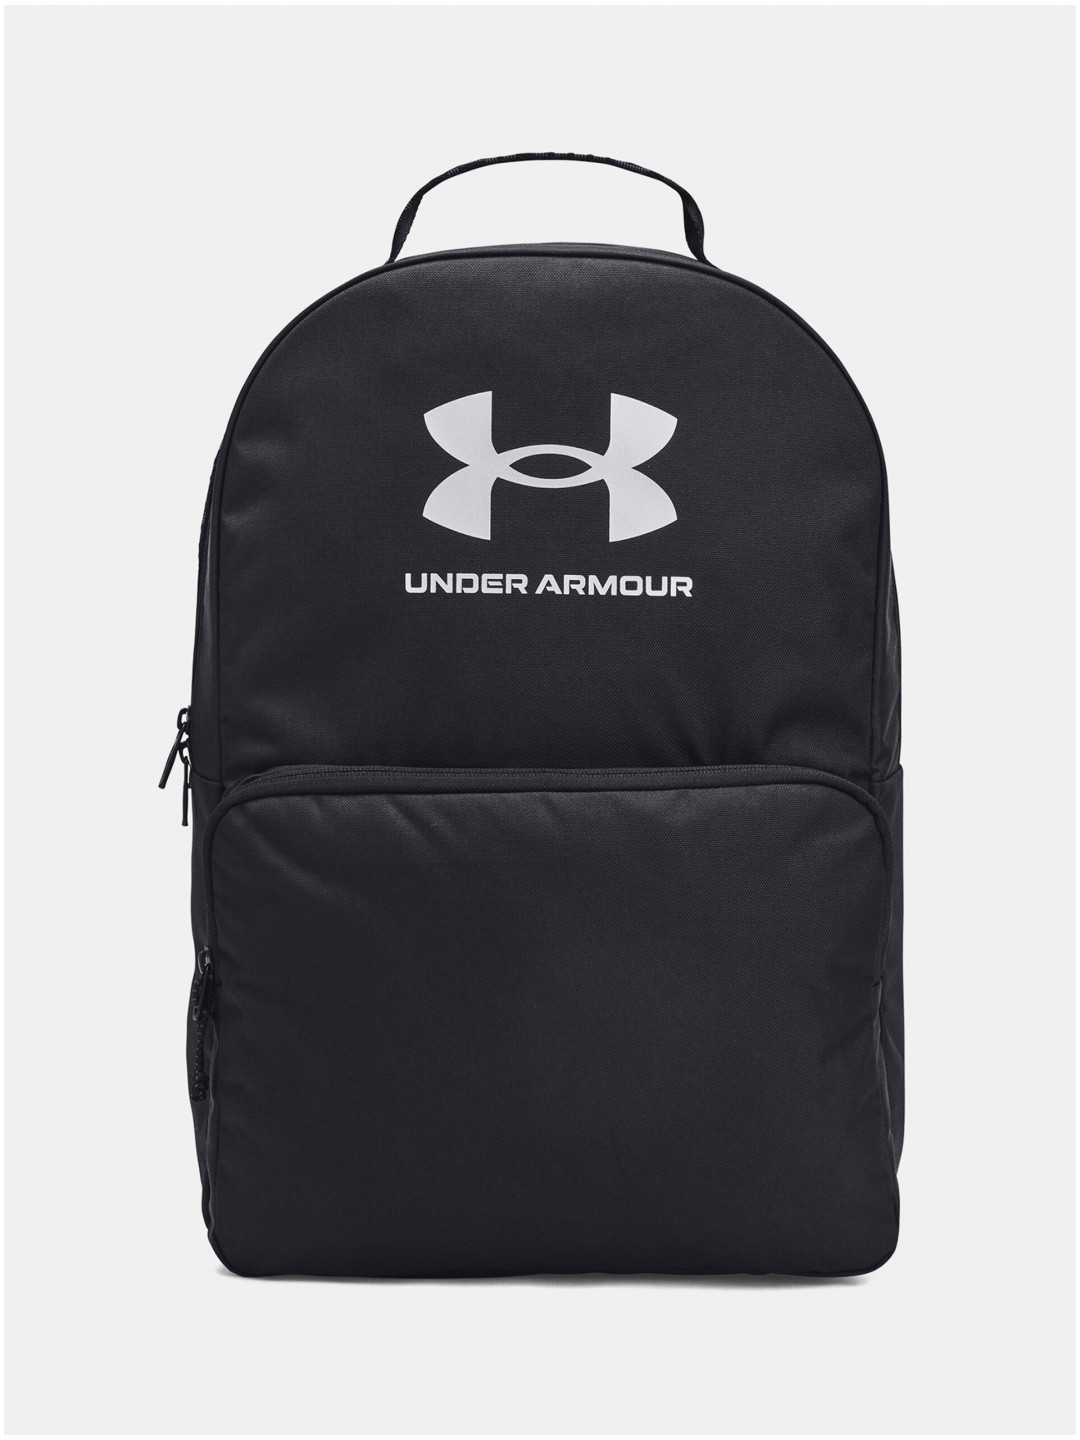 Černý sportovní batoh 25 5 l Under Armour UA Loudon Backpack